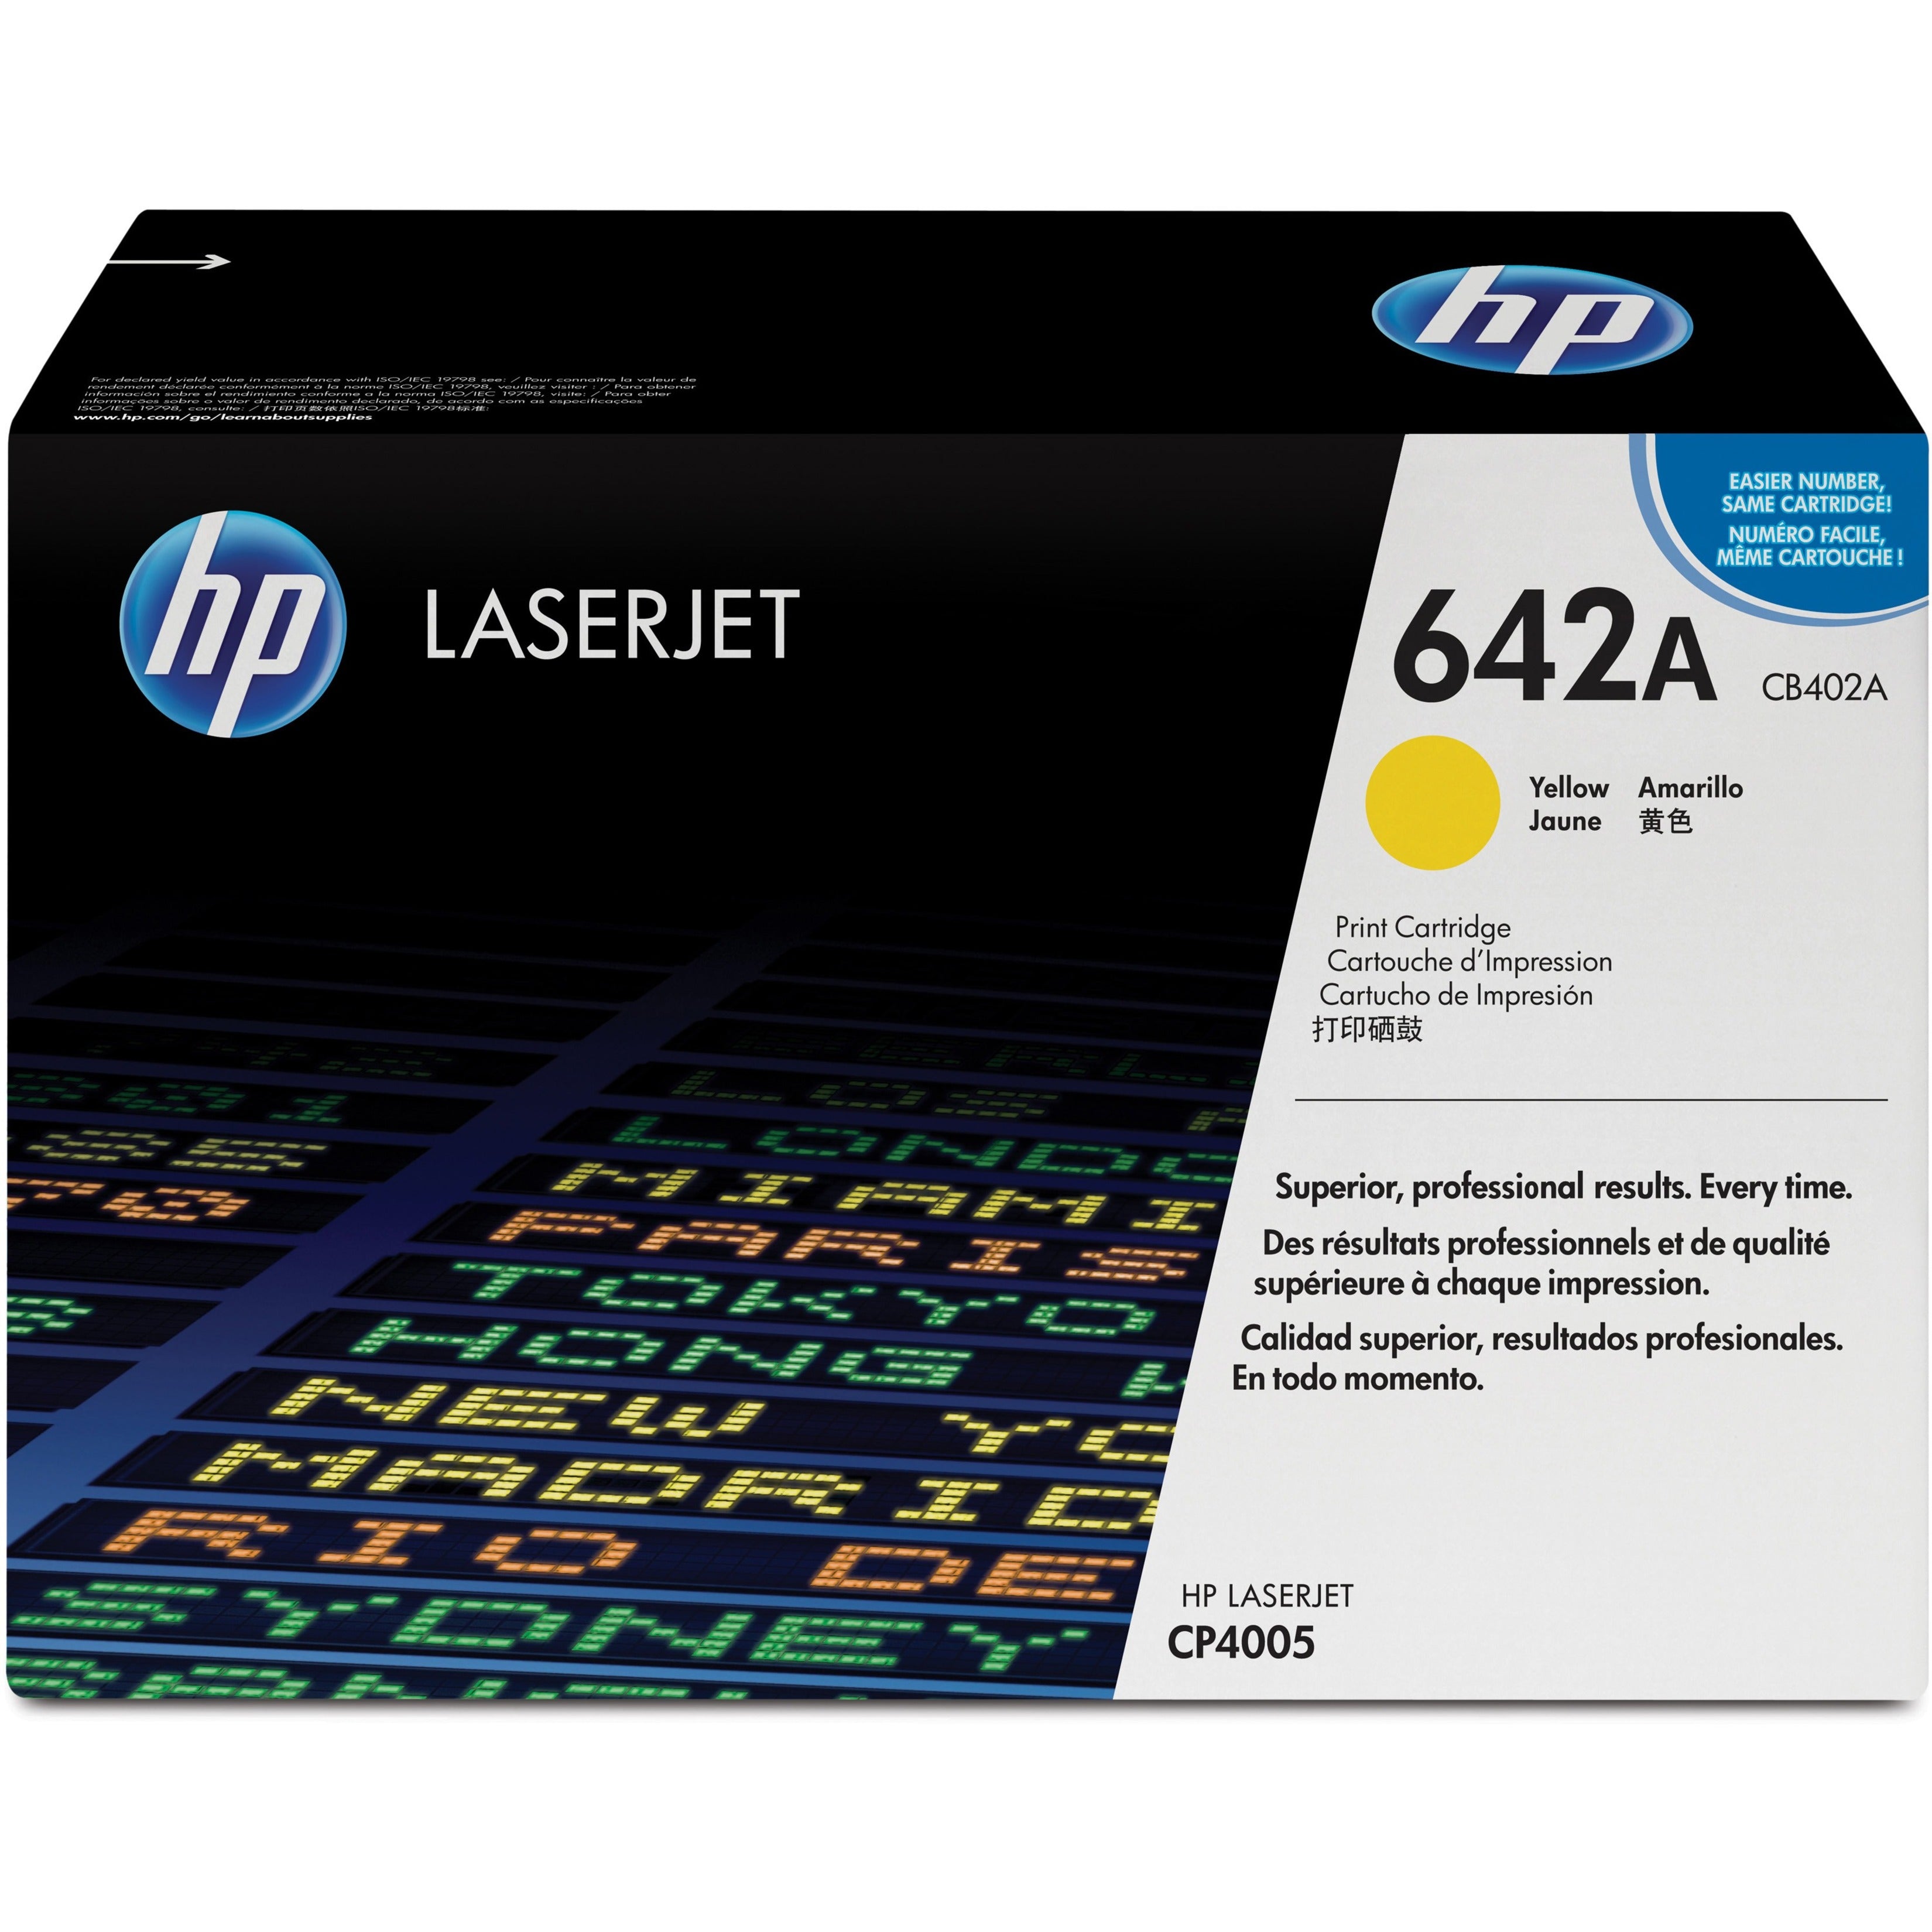 HP CB402A 642A LaserJet Print Cartridge, 7500 Page Yield, Yellow